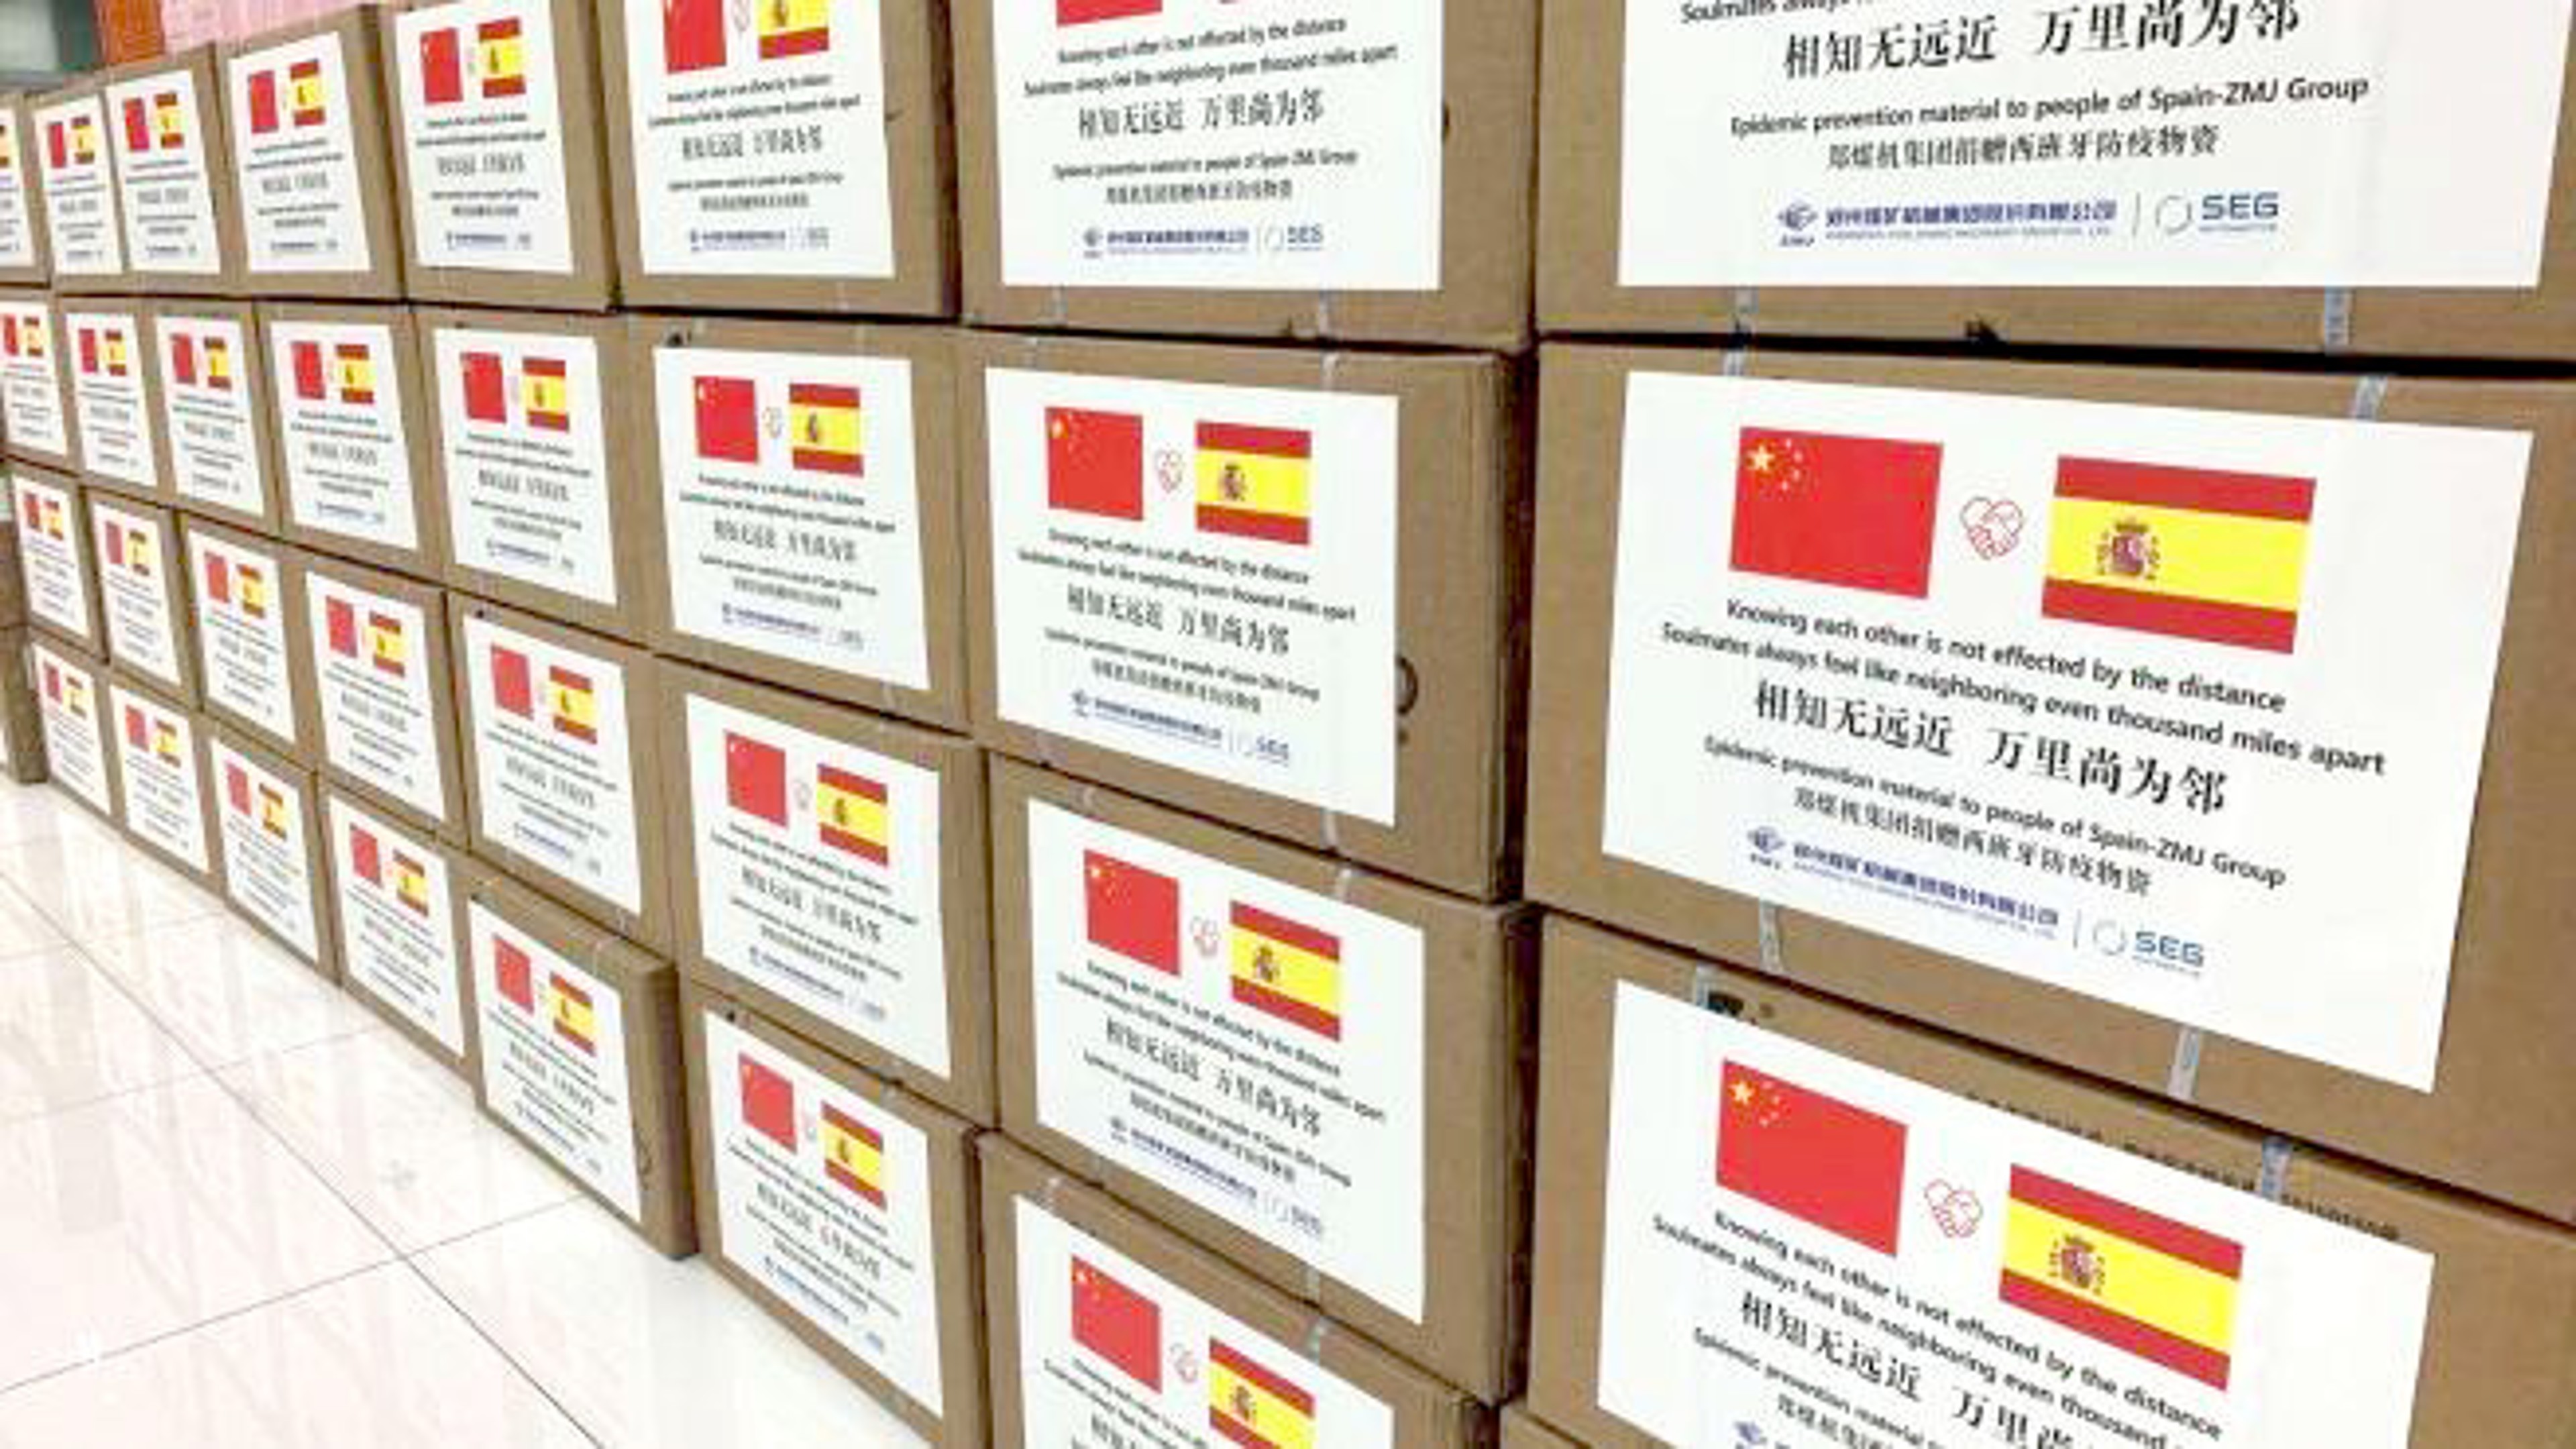 Kisten mit klinischen Gesichtsmasken aus China zur Unterstützung der spanischen Bevölkerung